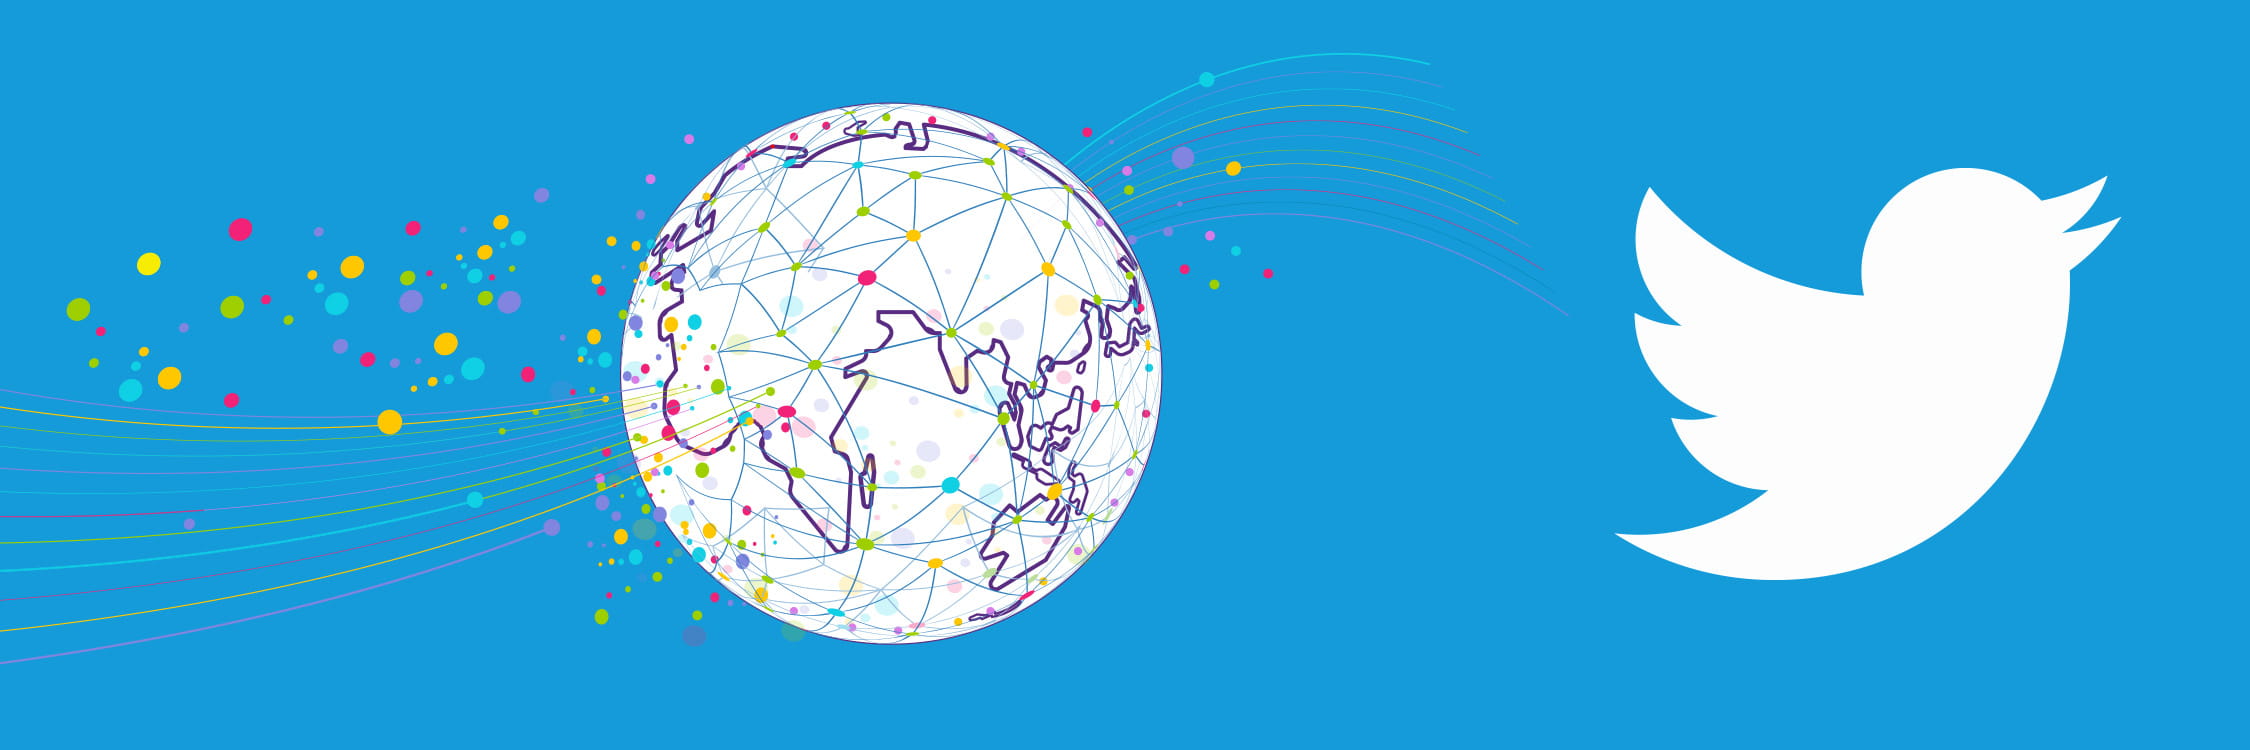 Global EDU Summit globe and the Twitter logo.